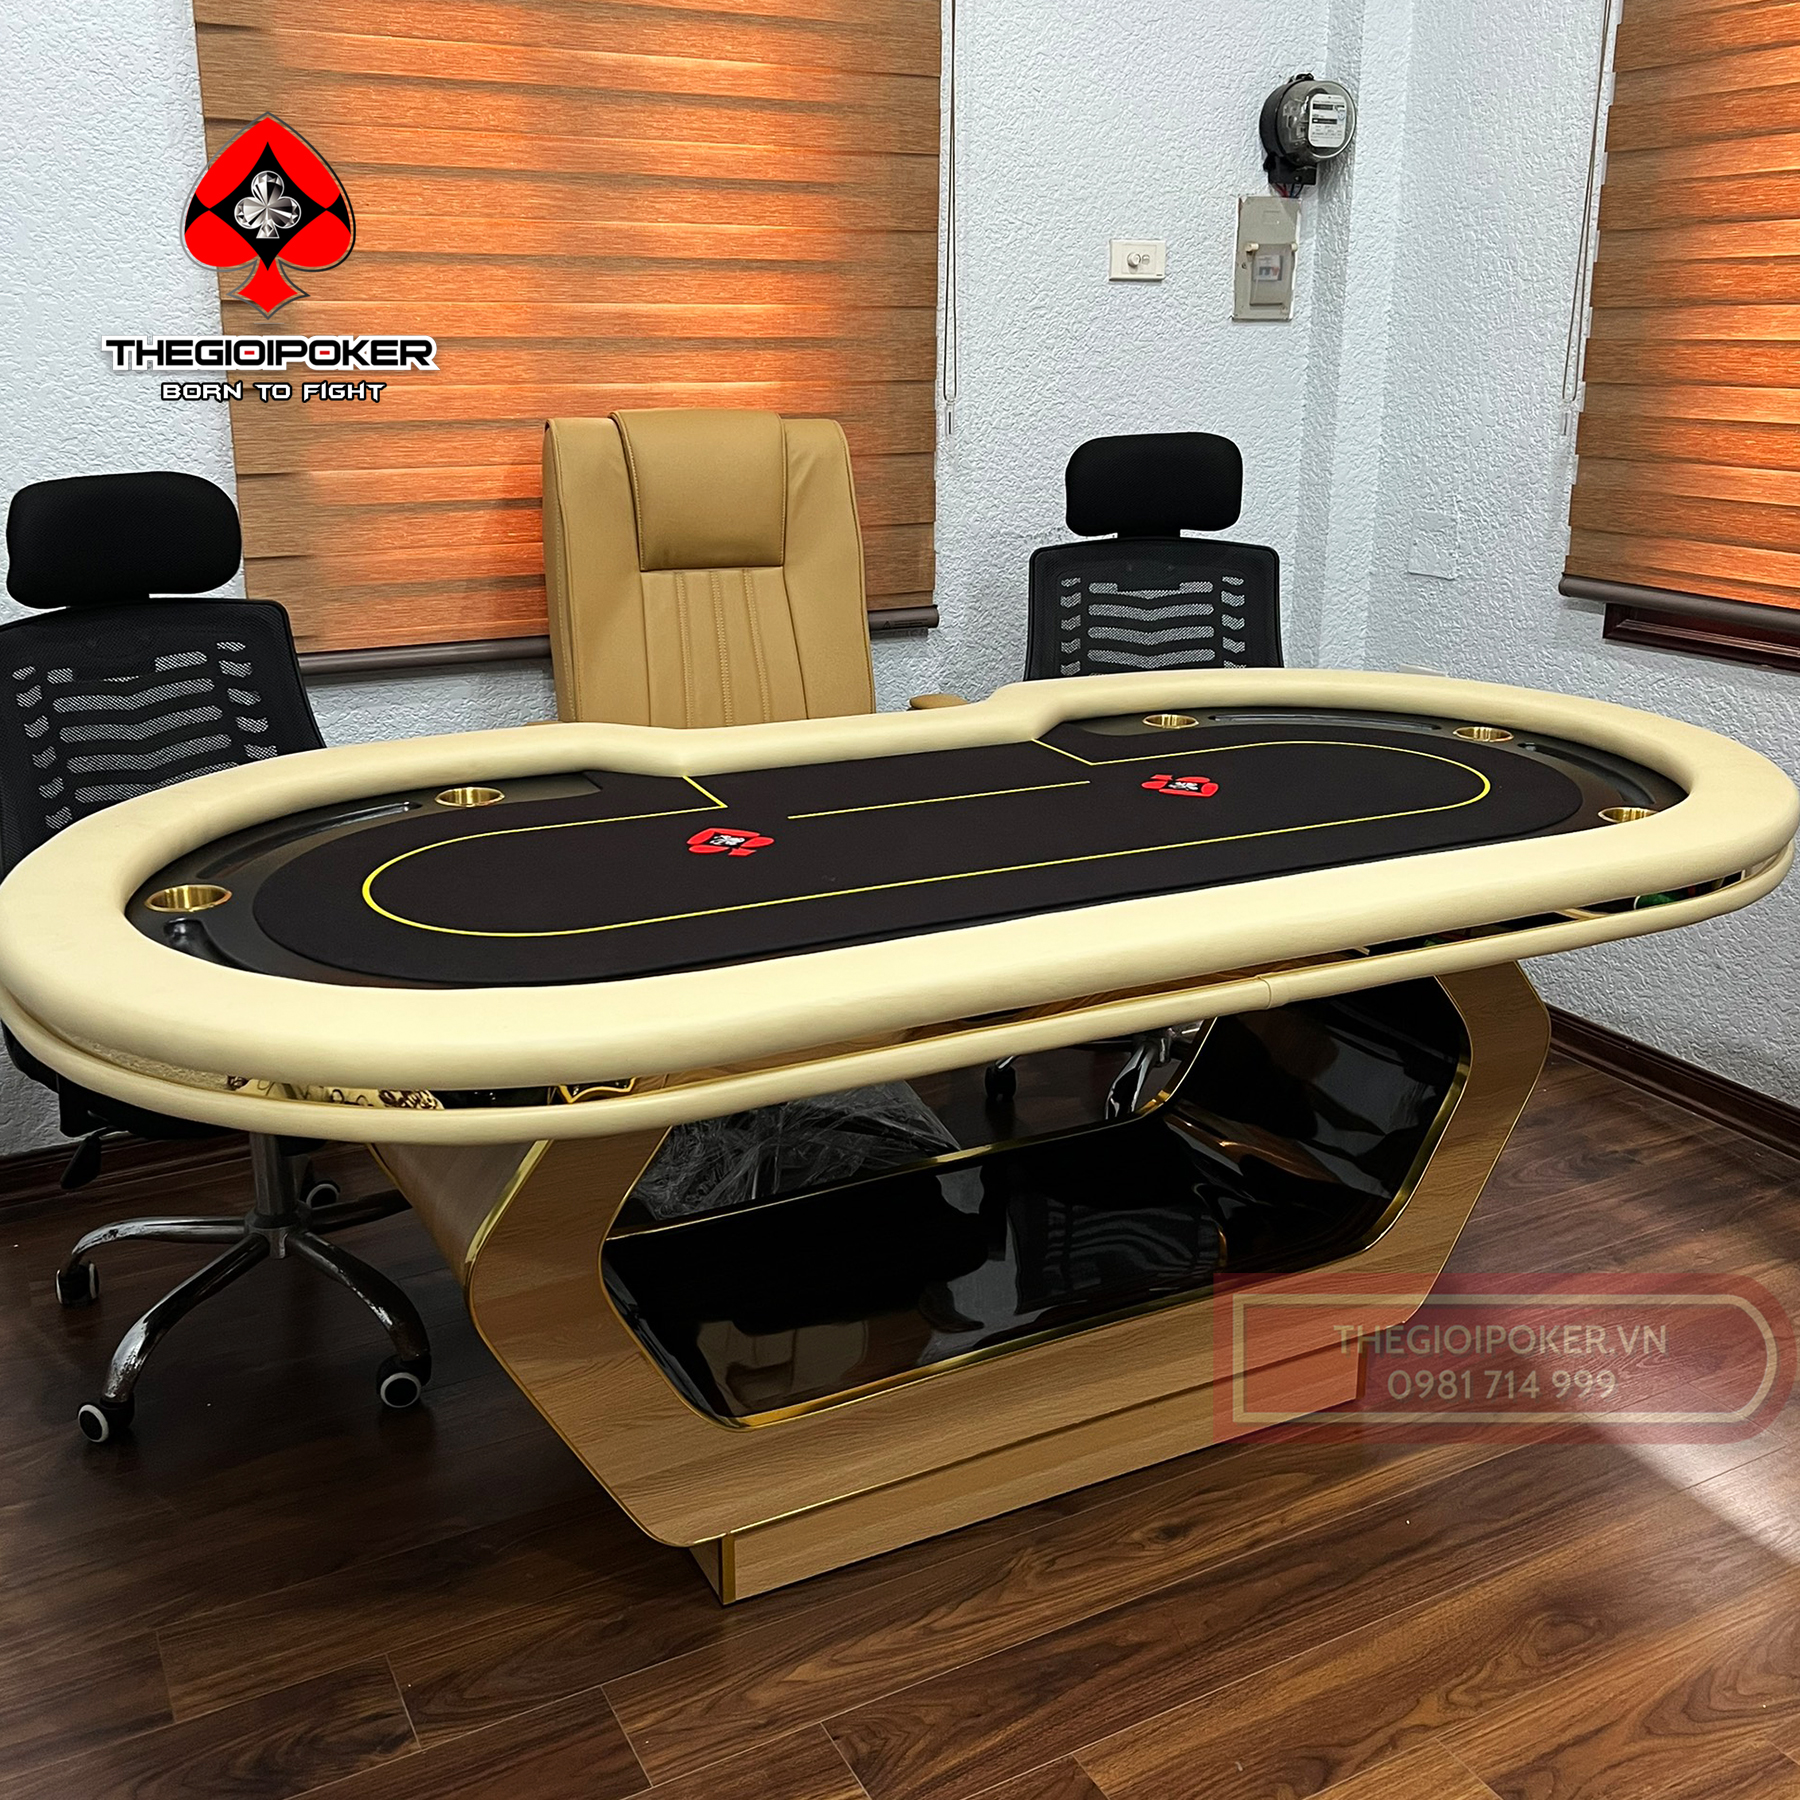 TheGioiPoker Hoàn thiện lắp đặt bàn poker Paulson Luxury tại quận 10 Hồ Chí Minh